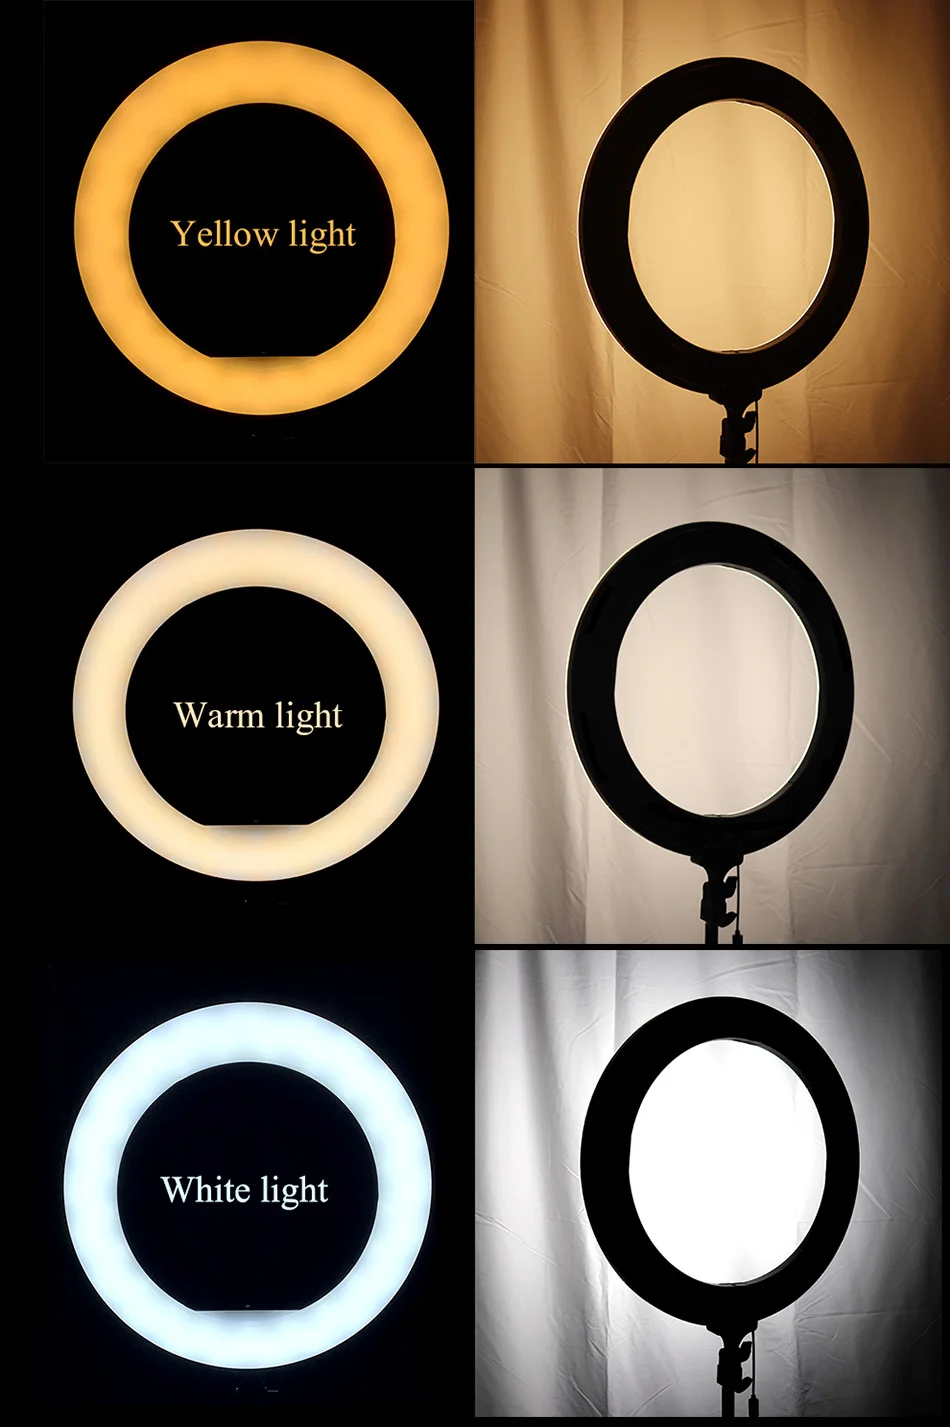 36 см/14 дюймов светодиодный кольцевой светильник для селфи с регулируемой яркостью светодиодный кольцевой светильник для студийной фотосъемки, видеокамеры, телефона, светильник-кольцо, светильник для макияжа на YouTube